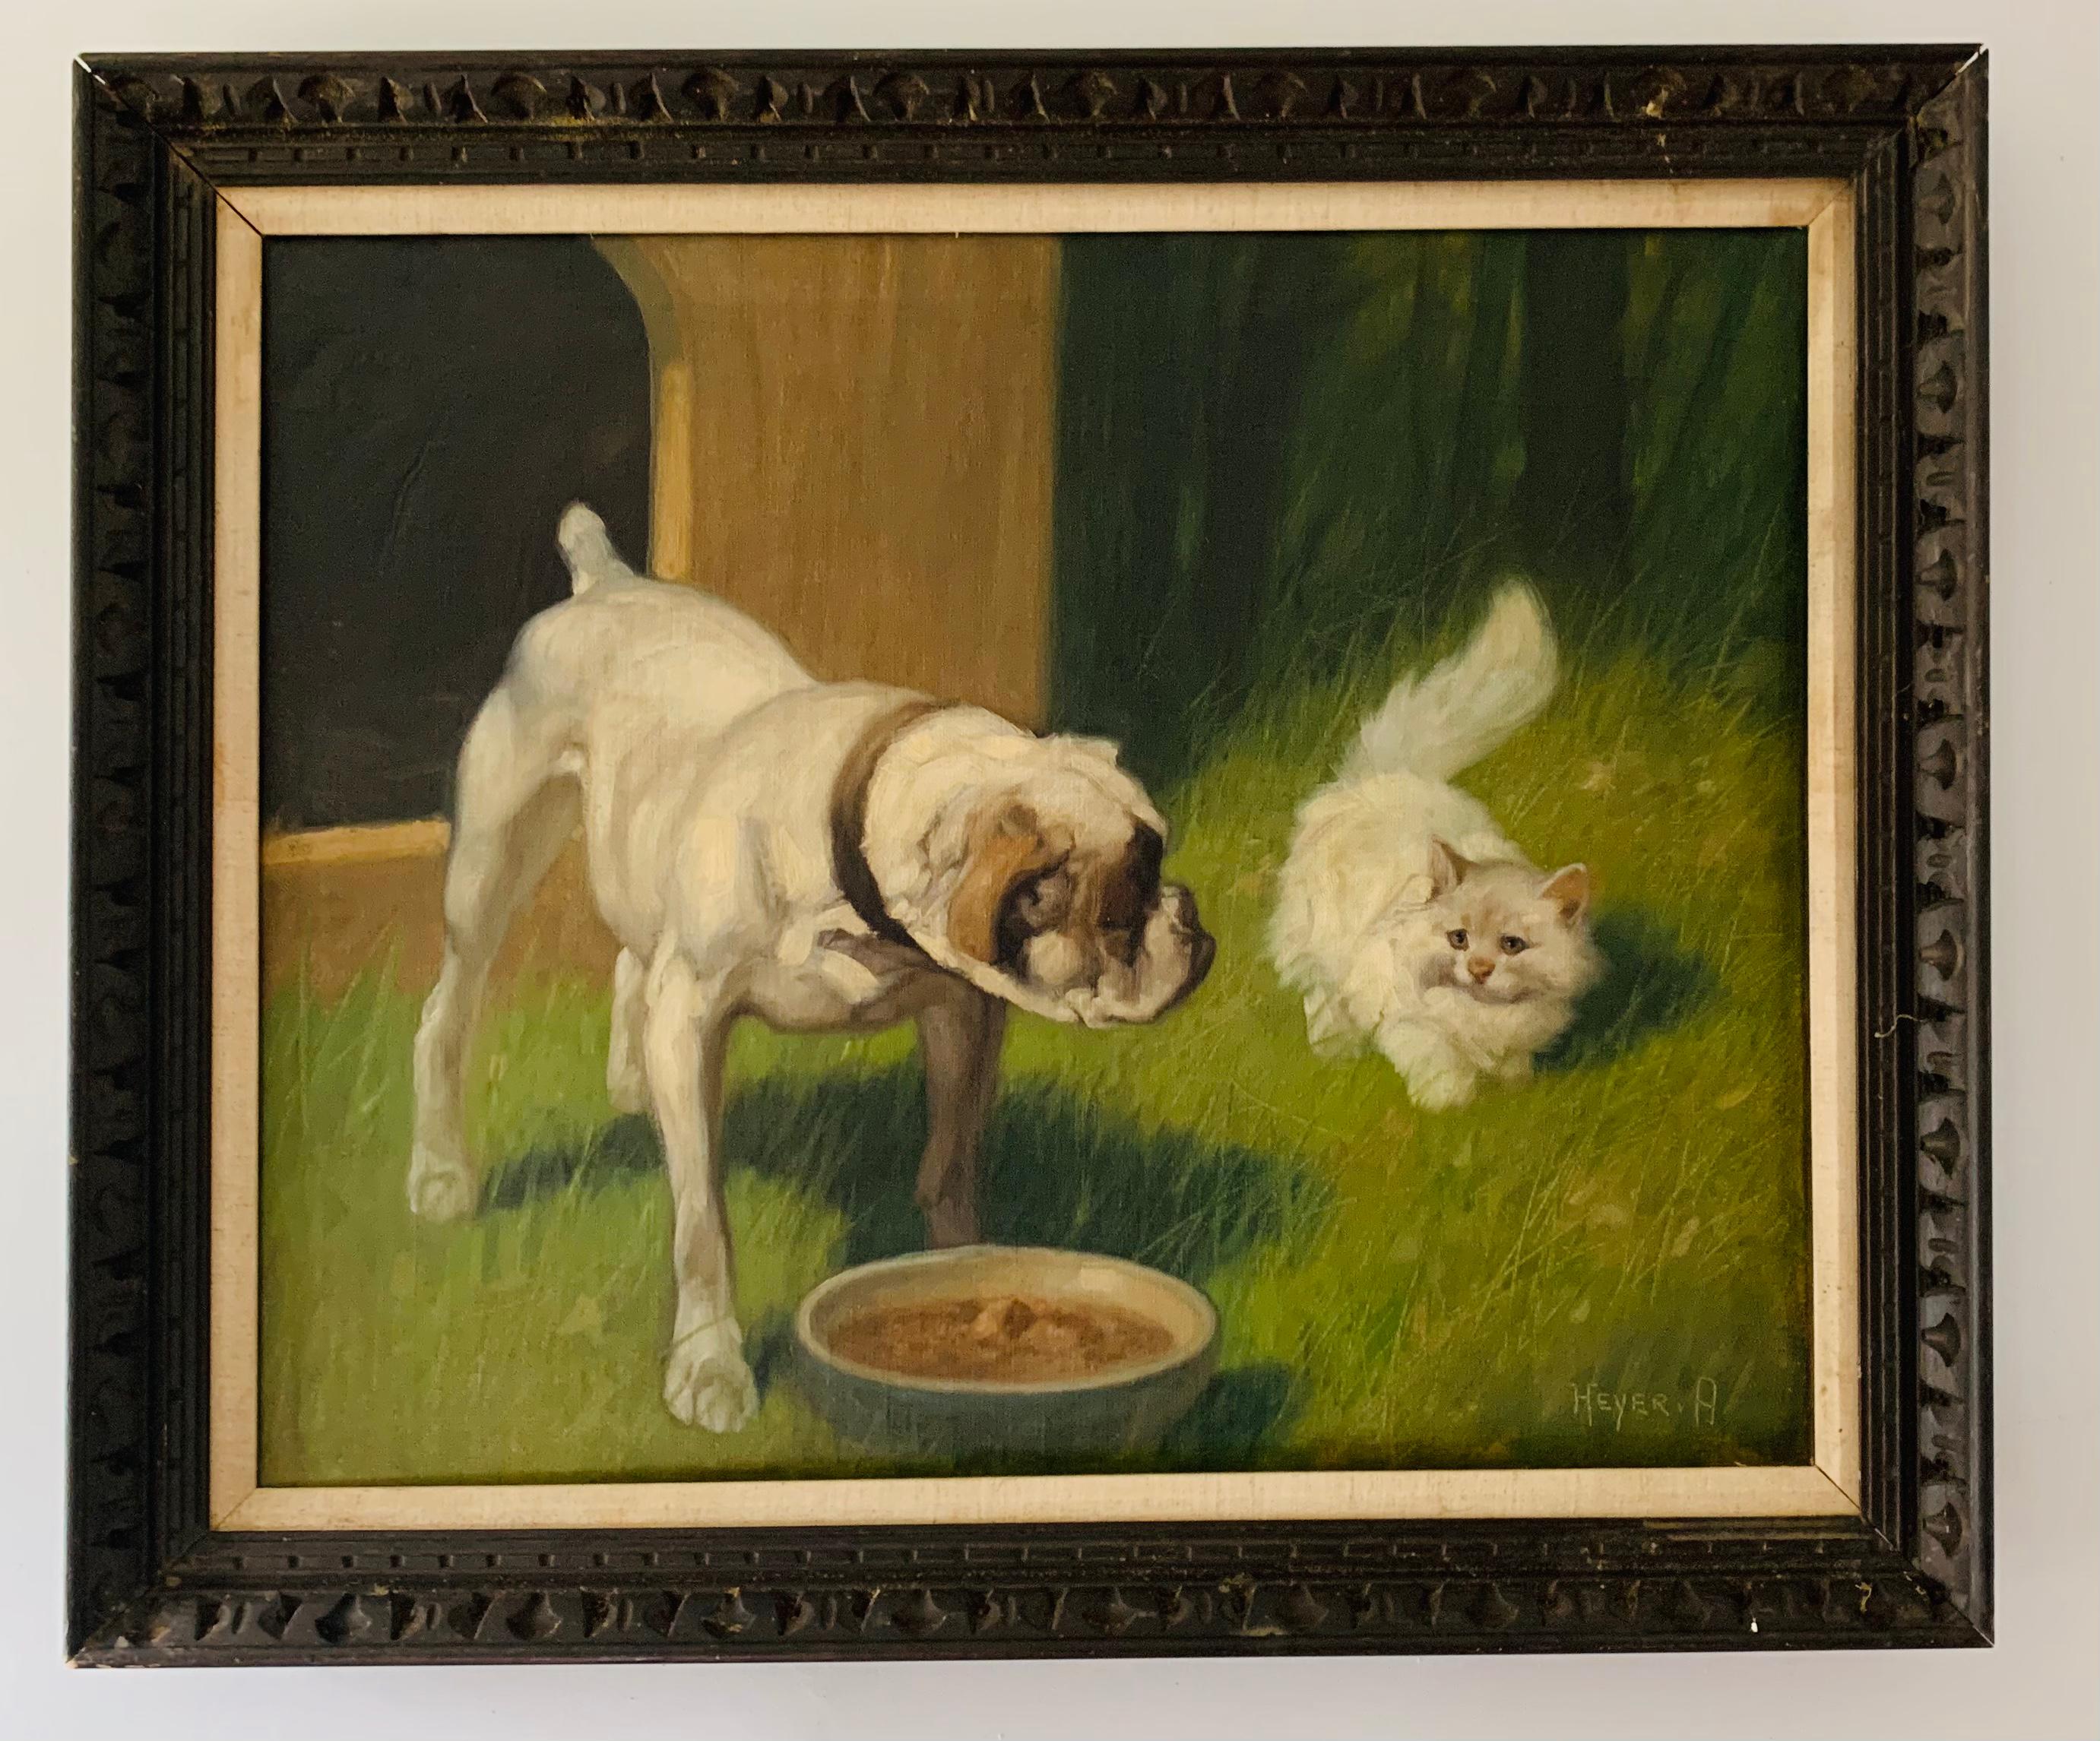 Animal Painting Arthur Heyer - Bol à alimentation de garde pour chien provenant d'un chat blanc pelucheux